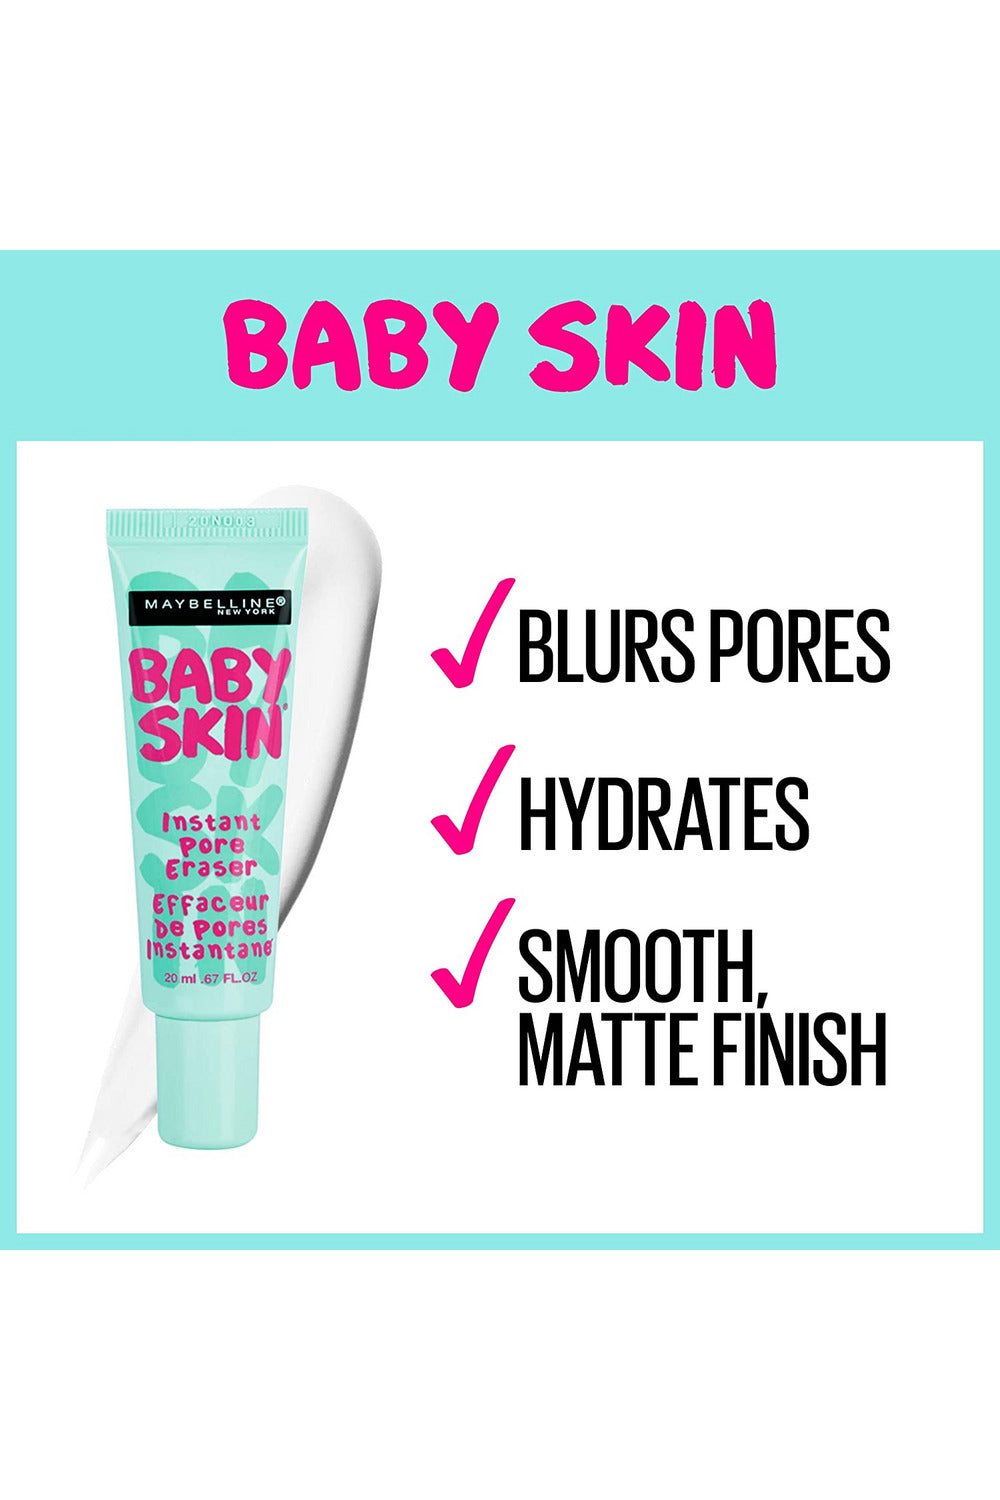 Buy Maybelline Baby Skin Instant Pore Eraser Prime in Pakistan